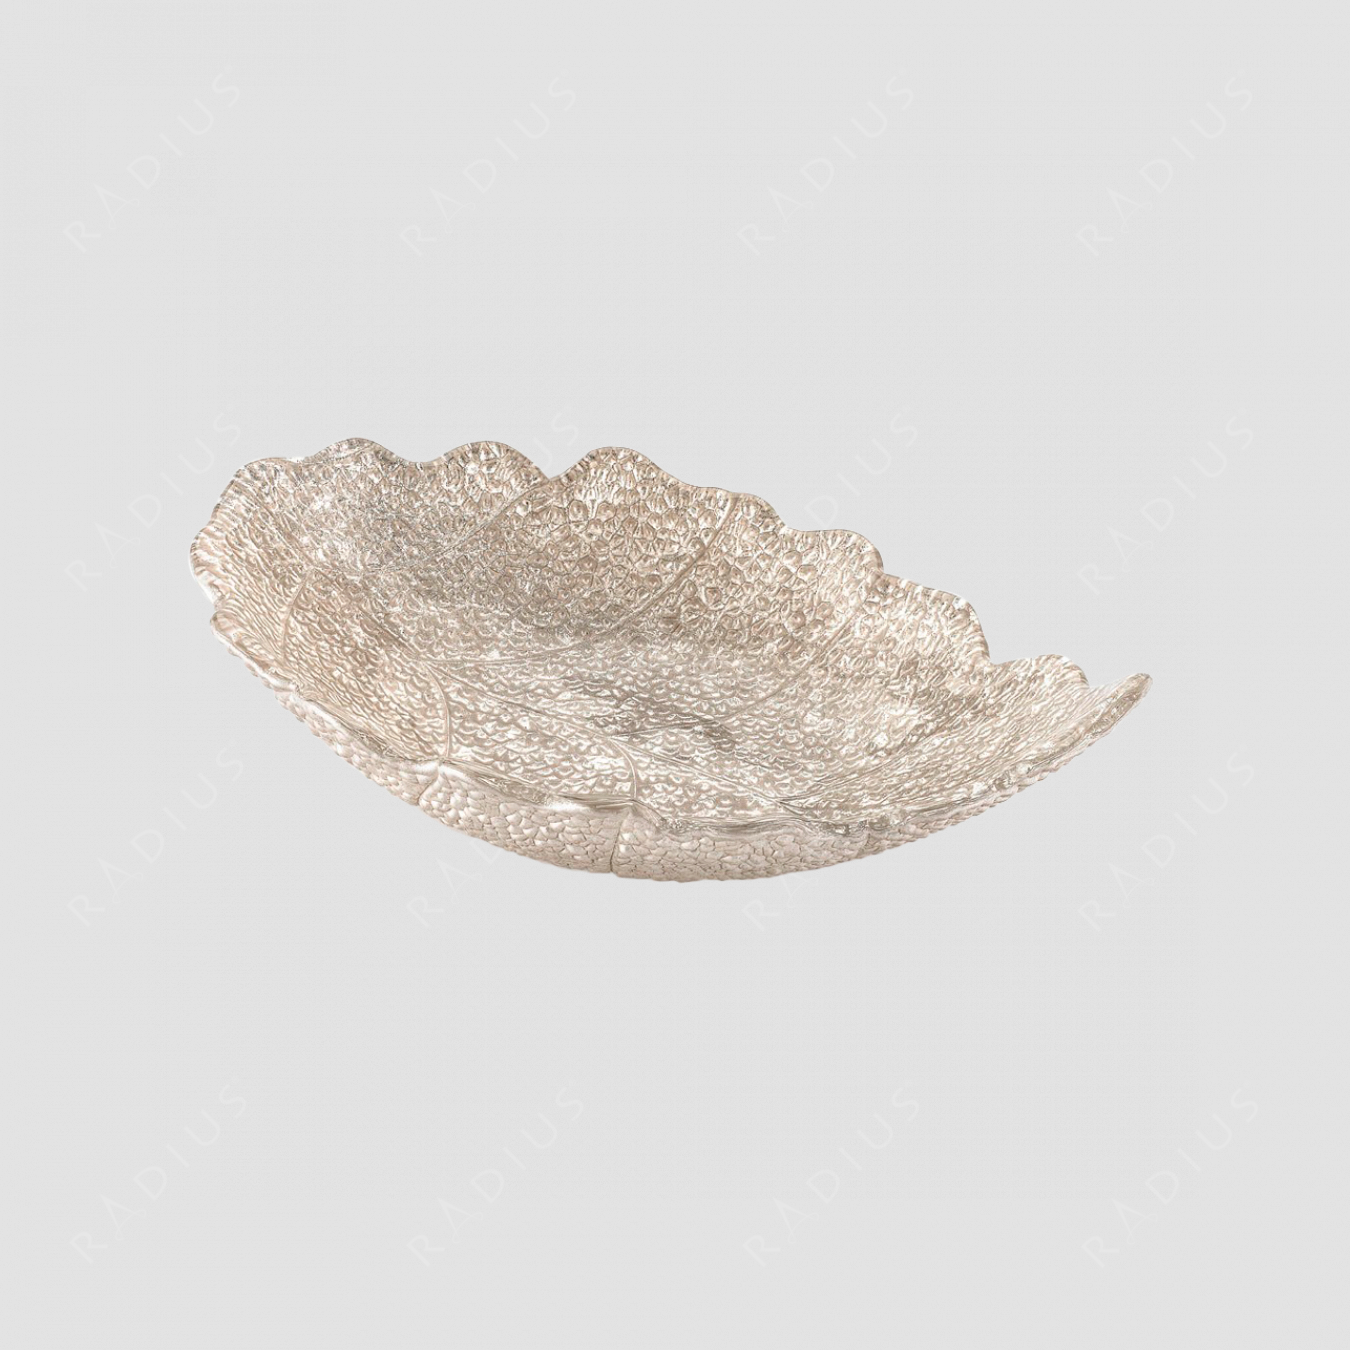 Блюдо в форме листа, размер: 33 х 22 х 8,5 см, материал: стекло, цвет: блестящий бежевый, серия Madagascar, IVV (Italy), Италия